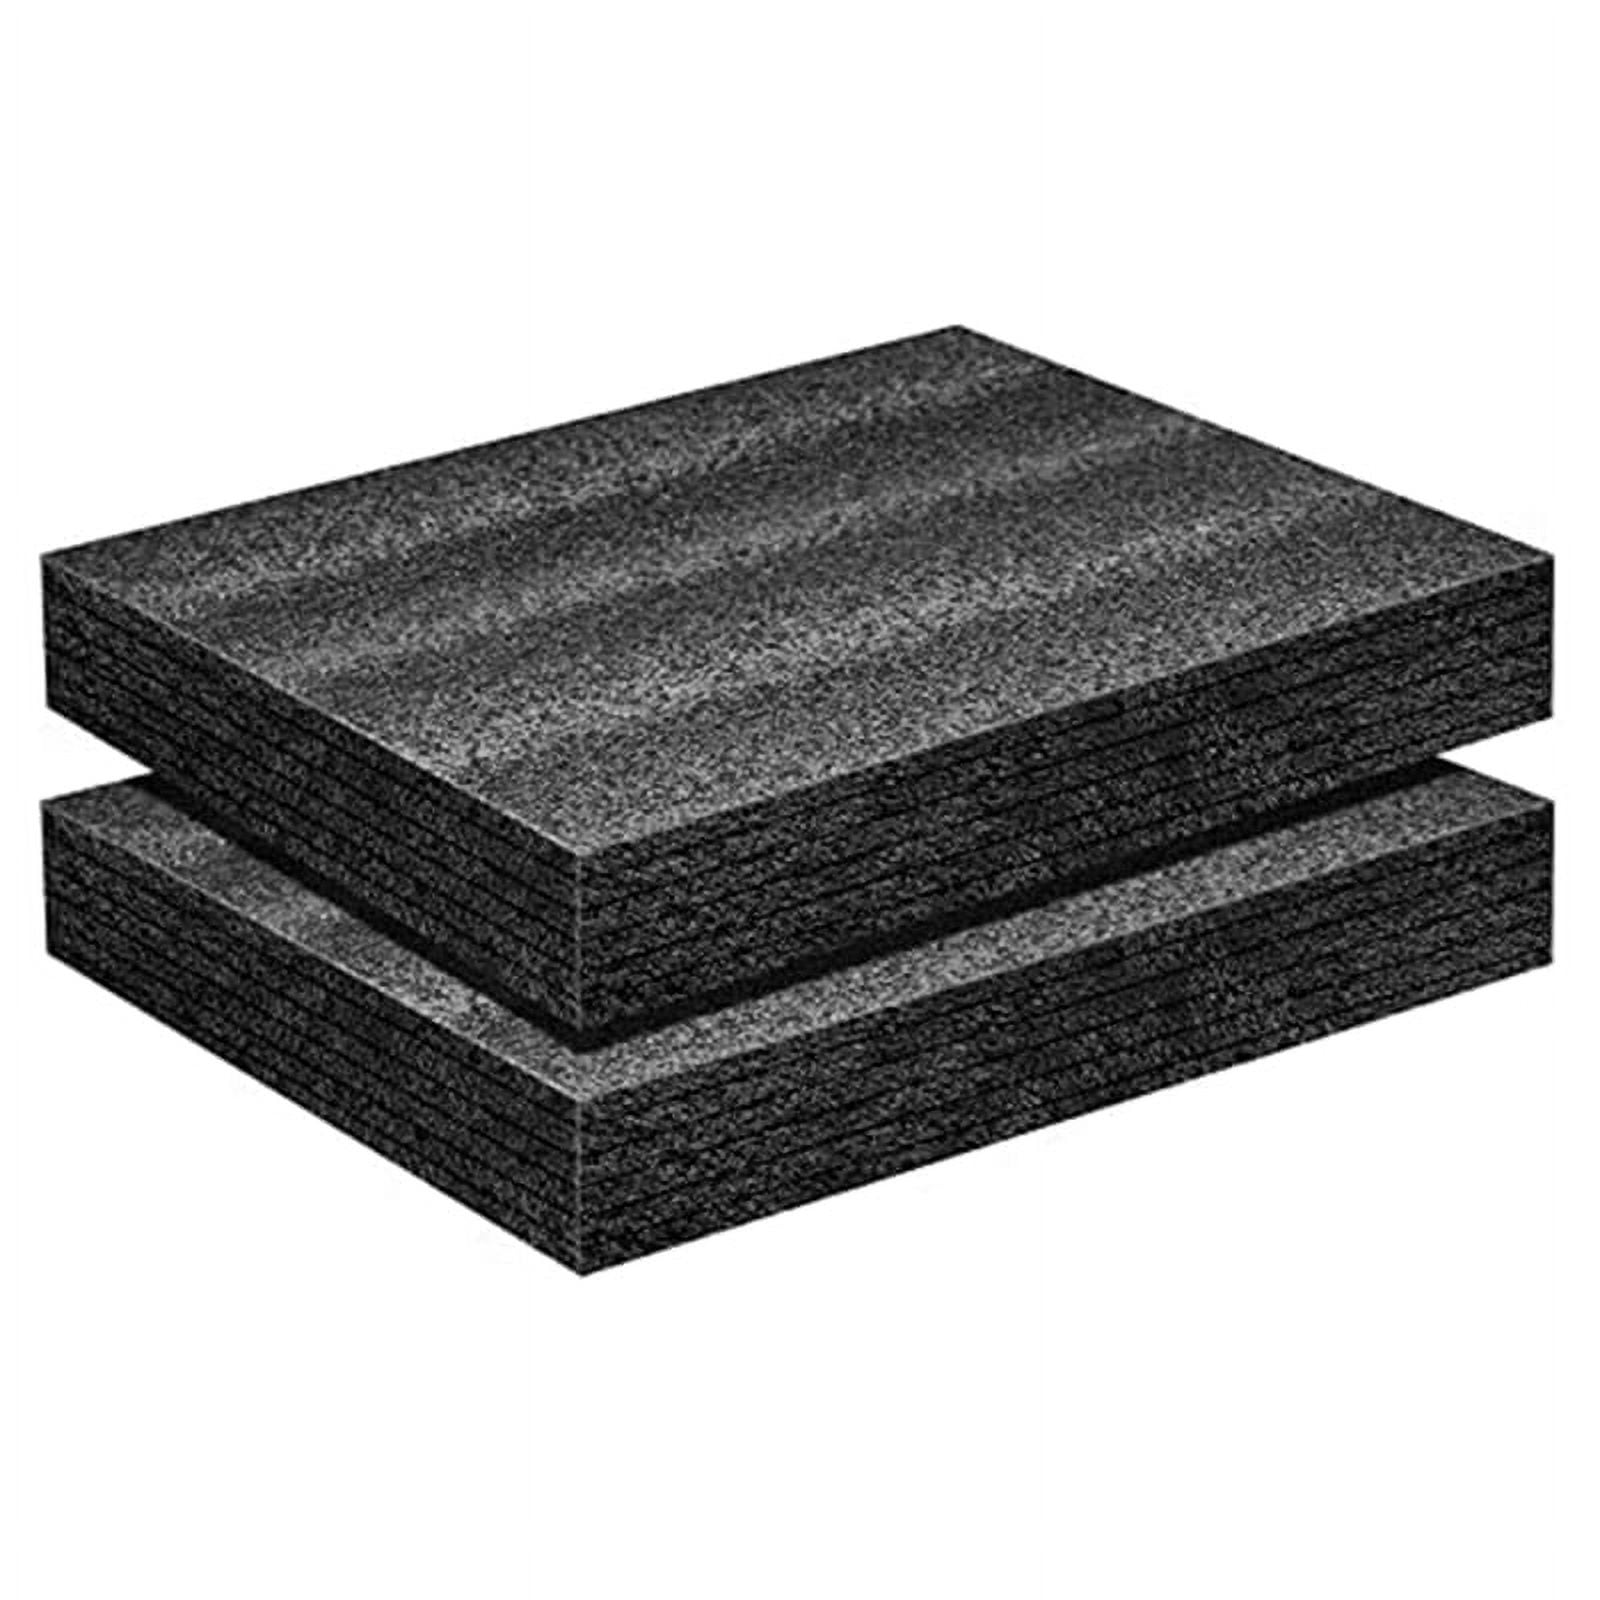 4x Foam Sheet 12 x 12 x 0.5 1/2 Thick Black PE Packing